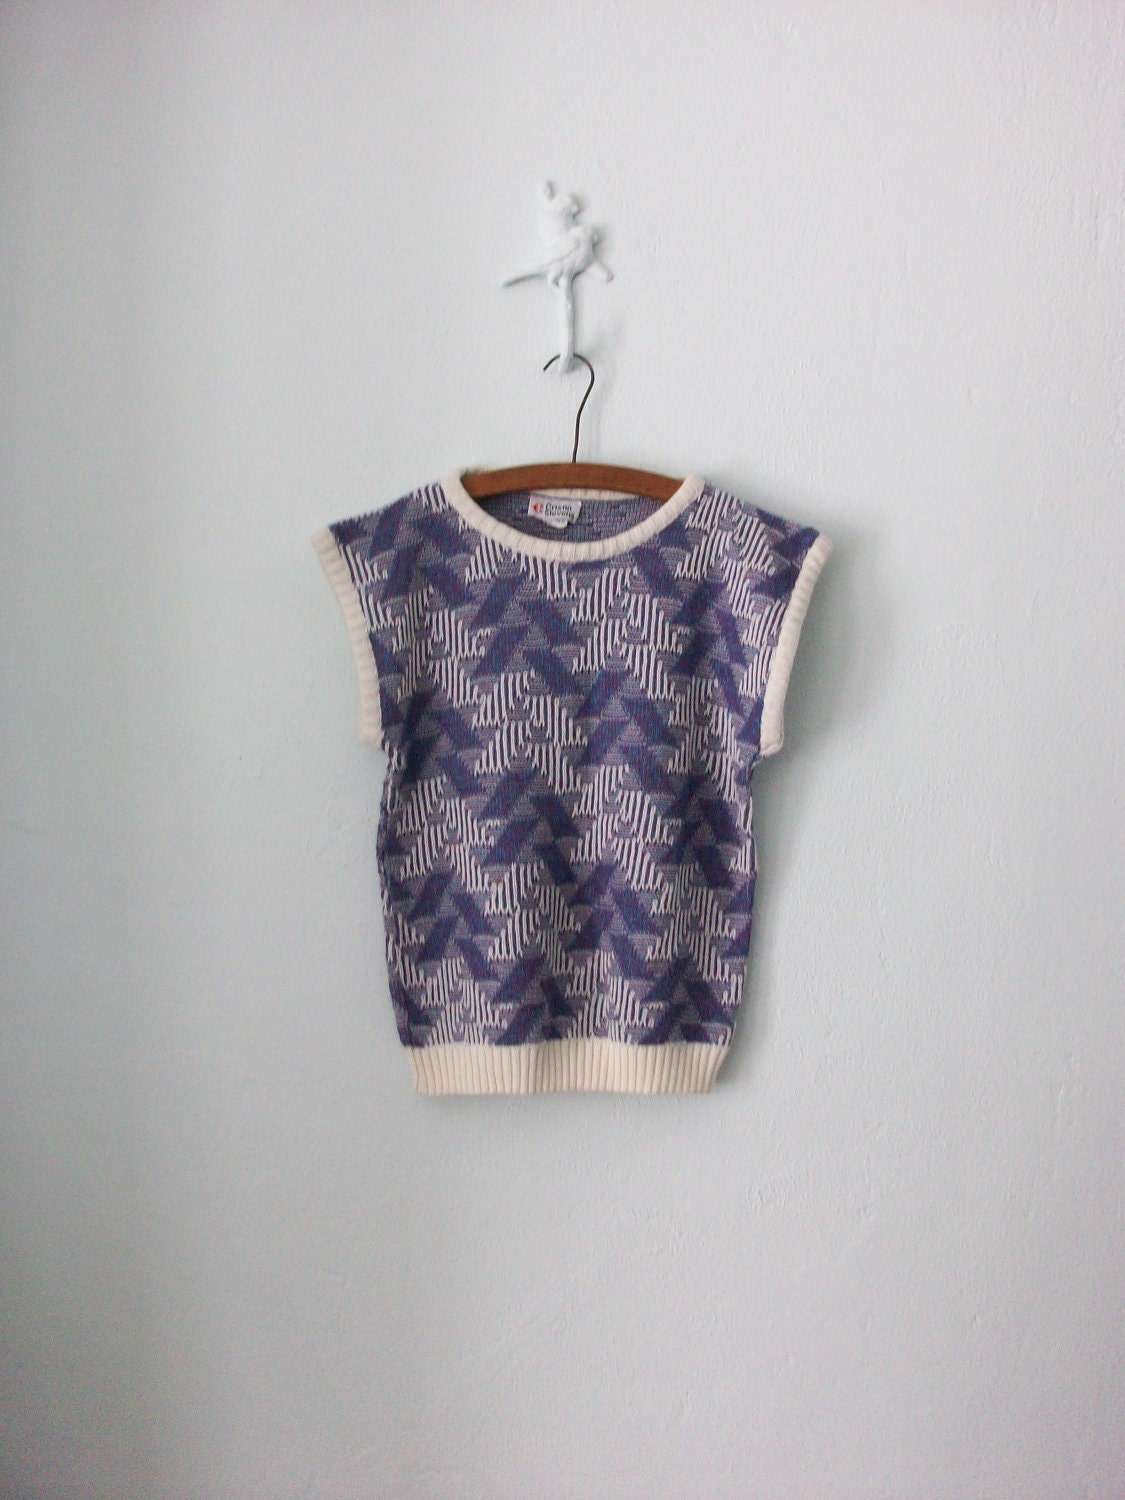 Abstract Texture Knit Top ... Modern Op Art Sweater Vest ... Medium